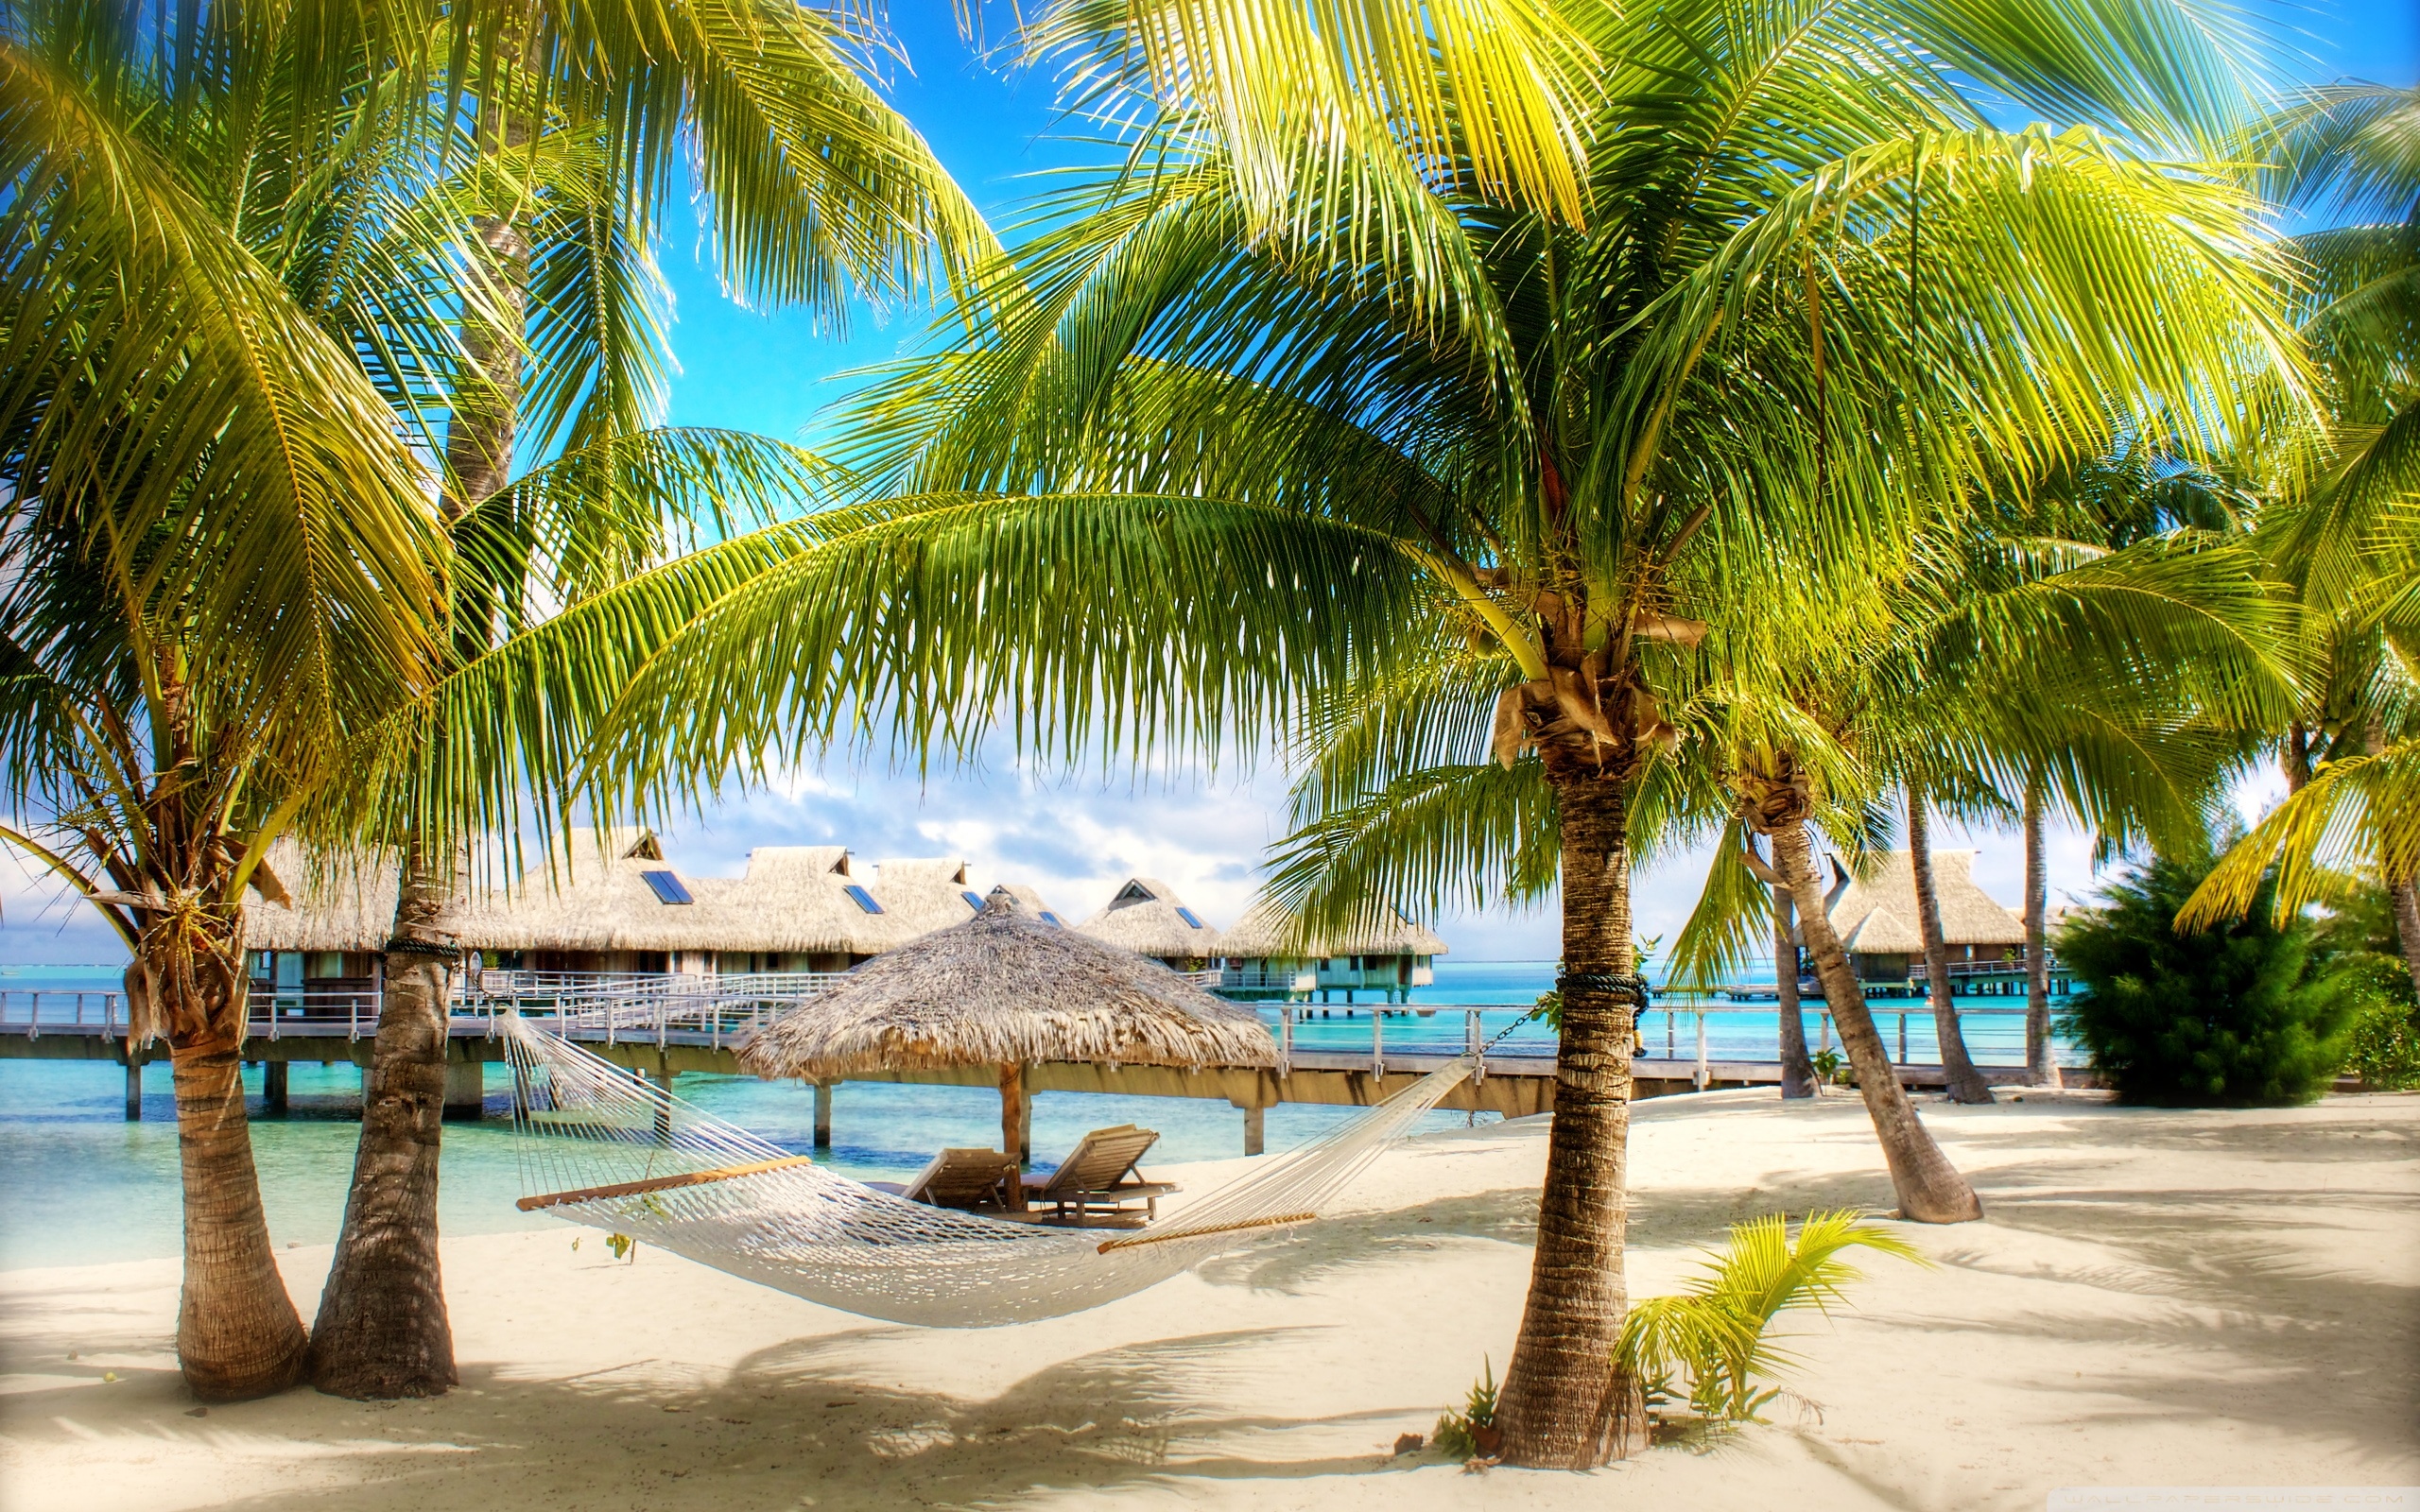 Tropical Beach Resort HD desktop wallpaper High Definition